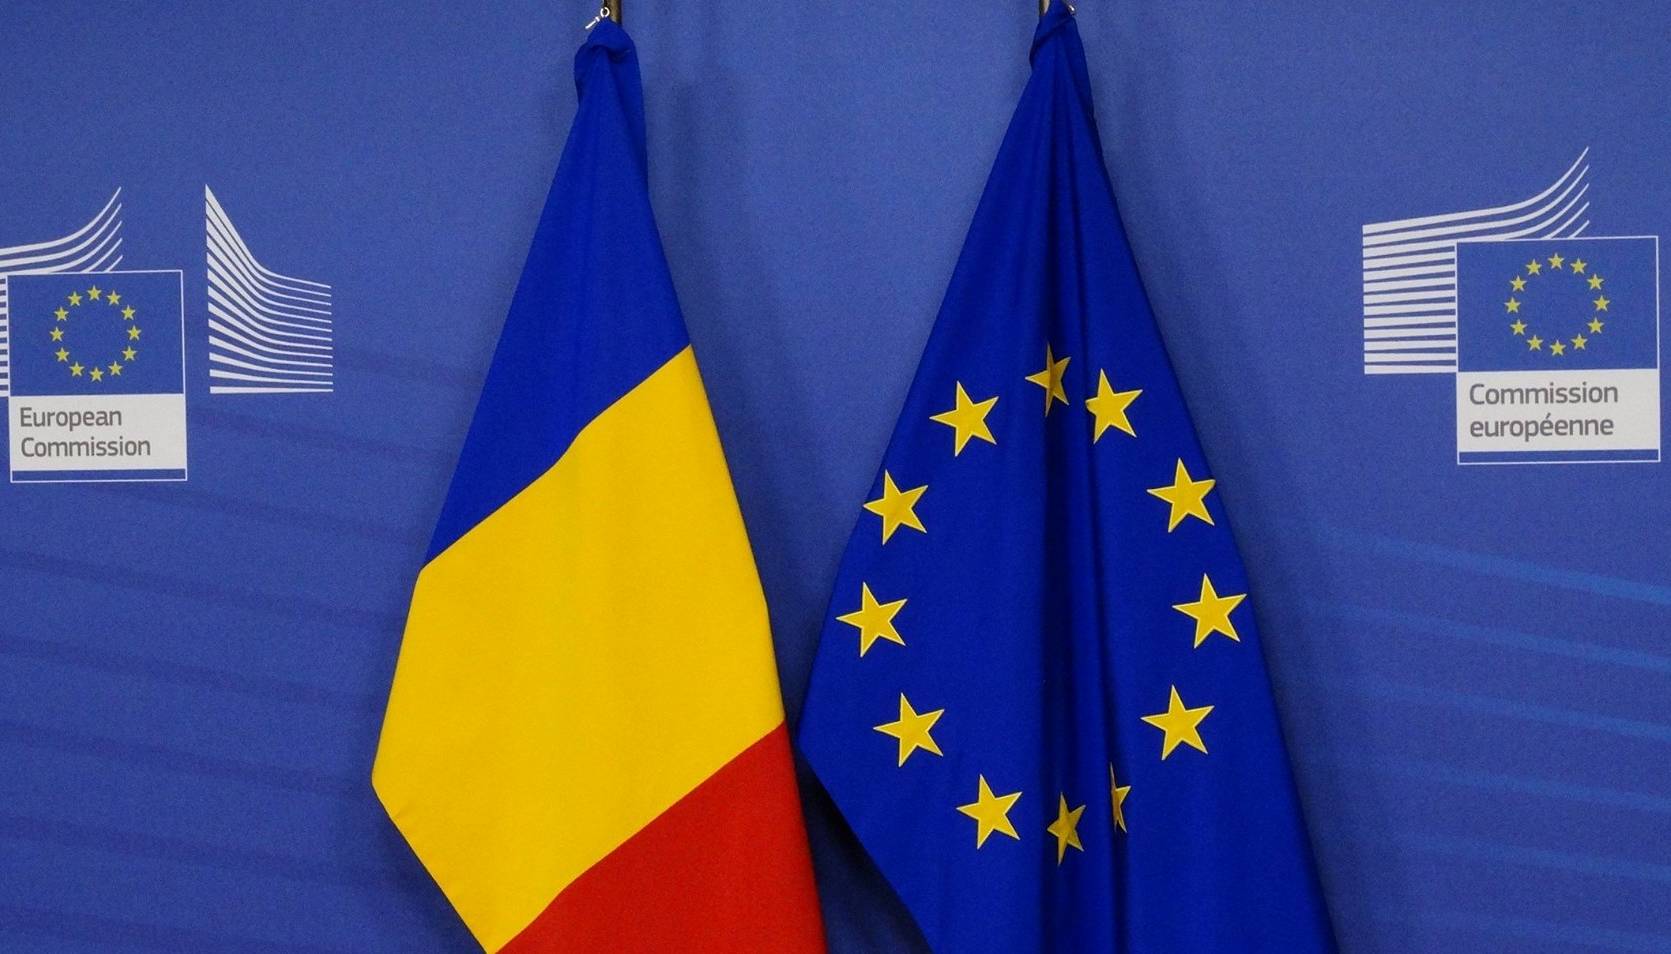 Die Europäische Kommission gewährt der Republik Moldau neue Finanzhilfen